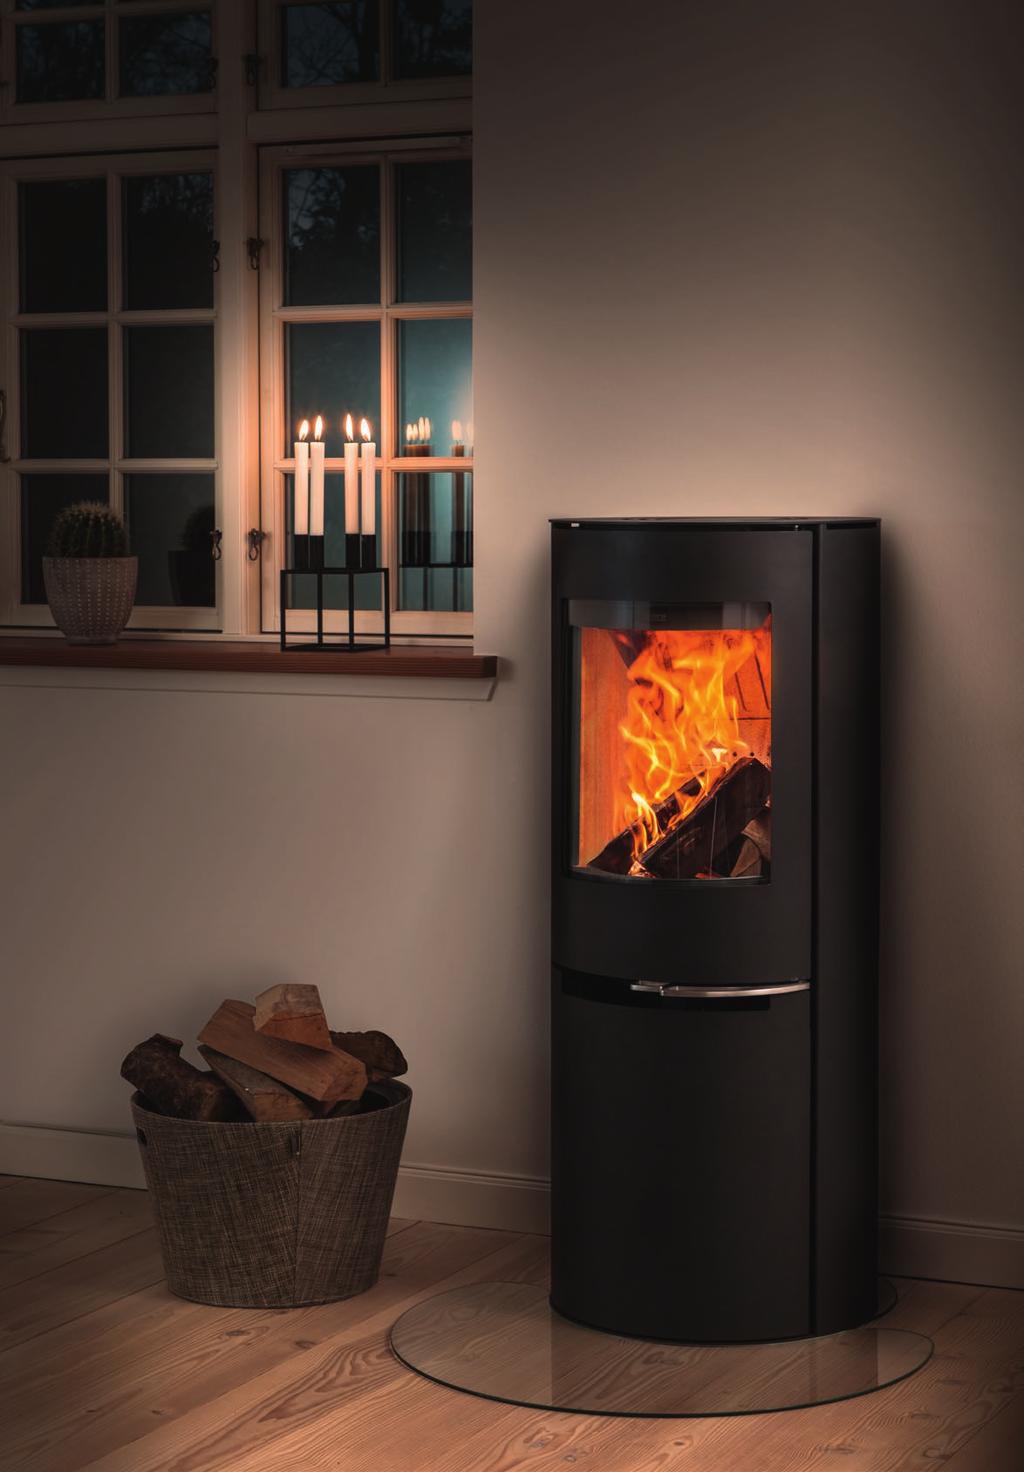 Verbreitet Wärme und Gemütlichkeit Genießen Sie die lebhaften Flammen und die gemütliche Atmosphäre von richtigem Brennholz.